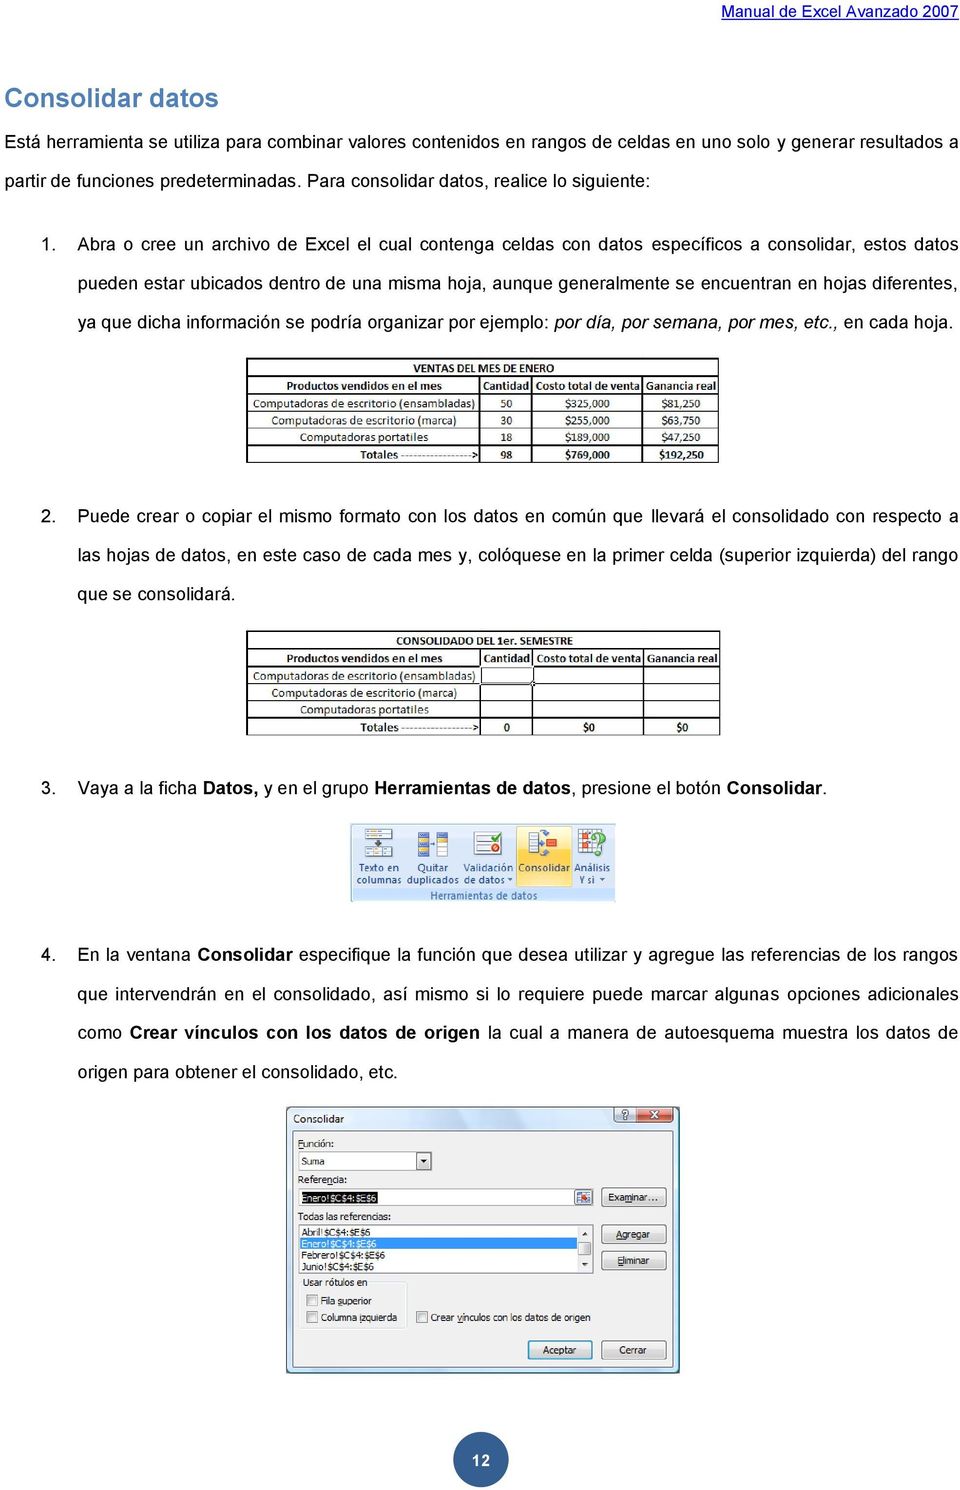 Abra o cree un archivo de Excel el cual contenga celdas con datos específicos a consolidar, estos datos pueden estar ubicados dentro de una misma hoja, aunque generalmente se encuentran en hojas